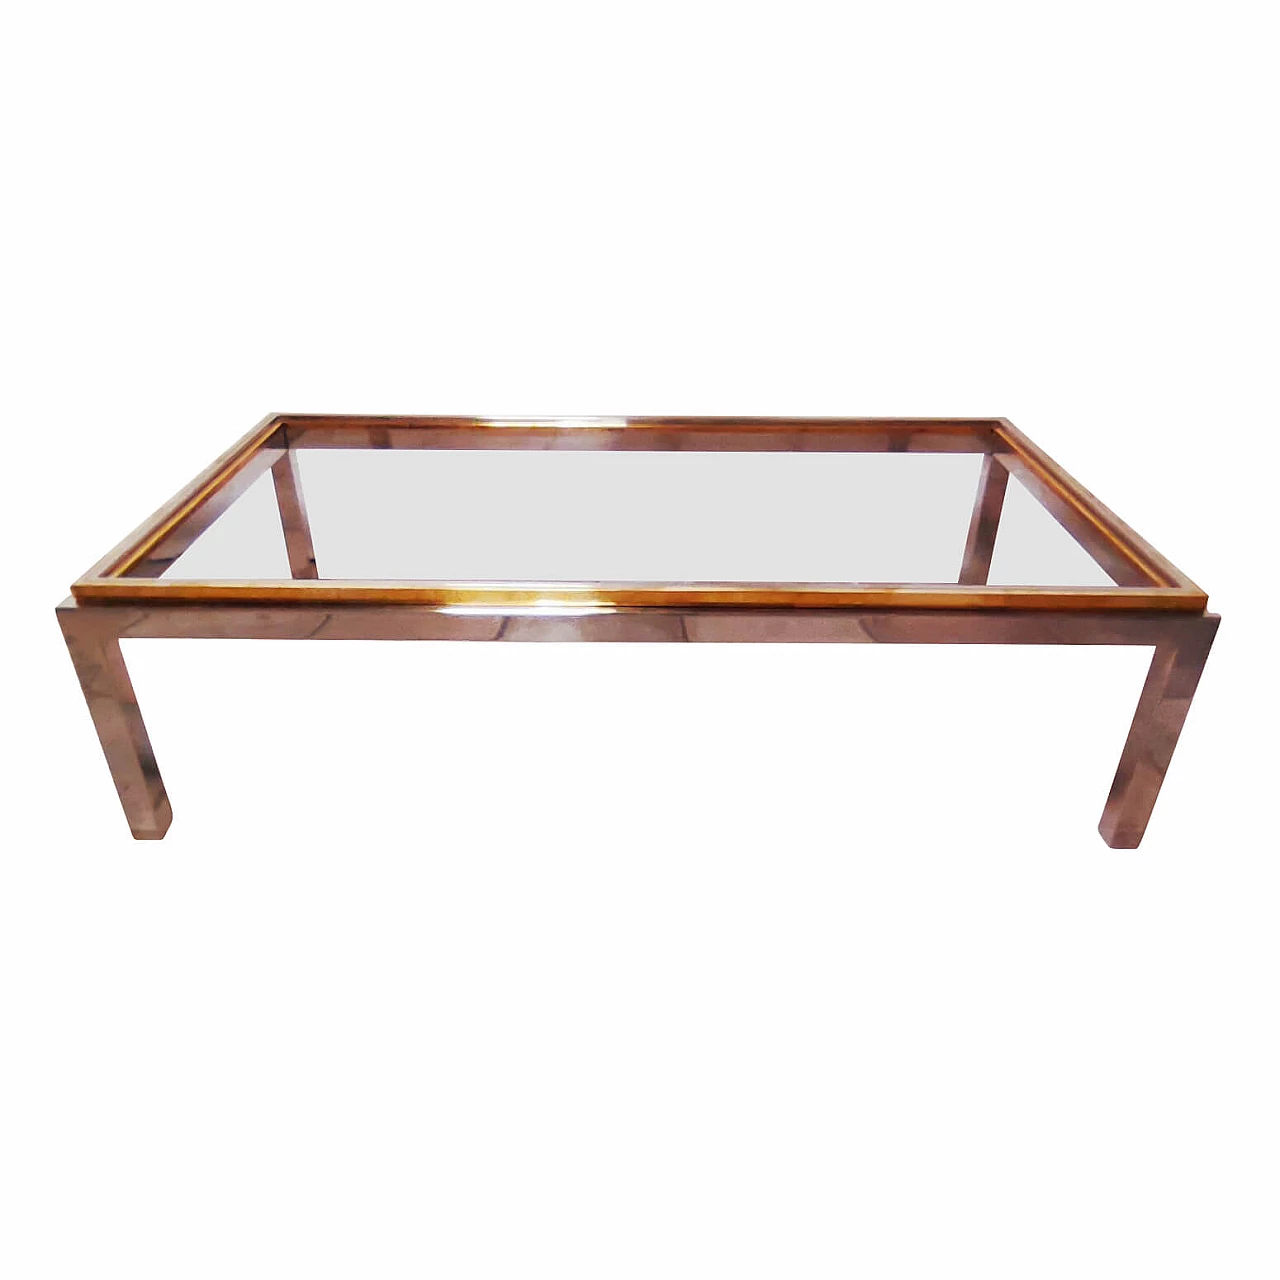 Tavolino in acciaio e ottone con vetro trasparente, di Jean Charles 1162626